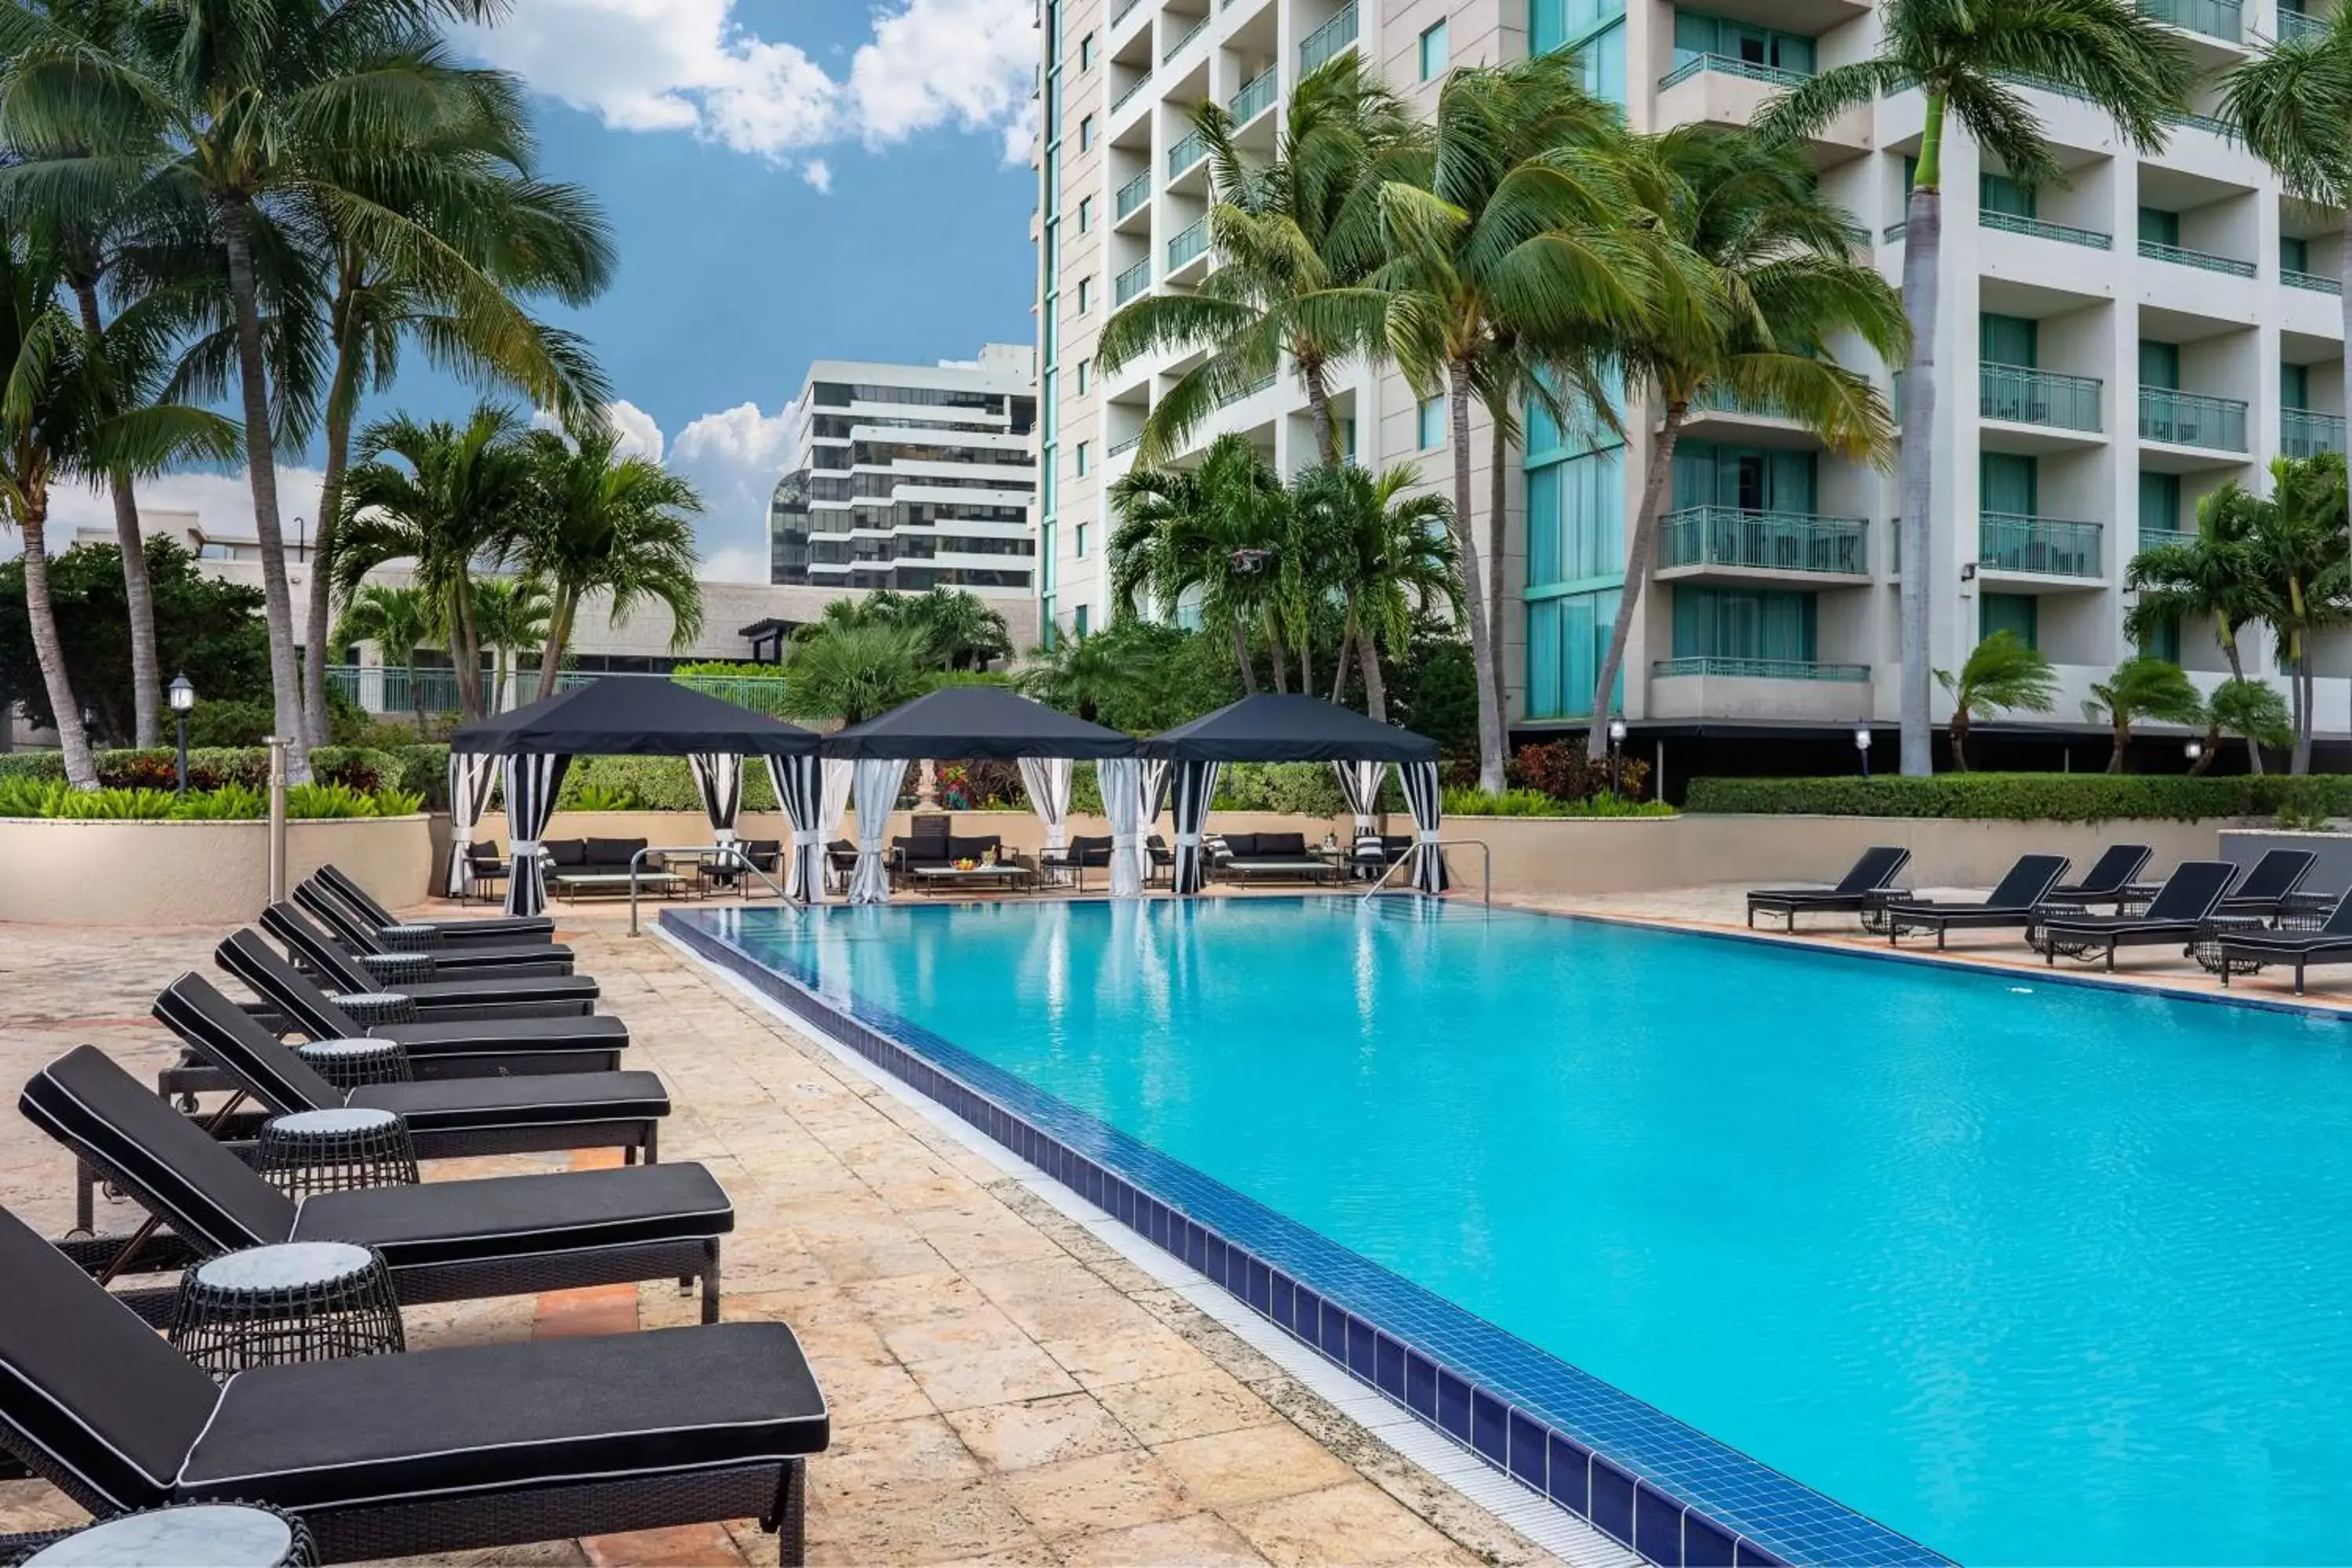 Swimming Pool in The Ritz-Carlton Coconut Grove, Miami